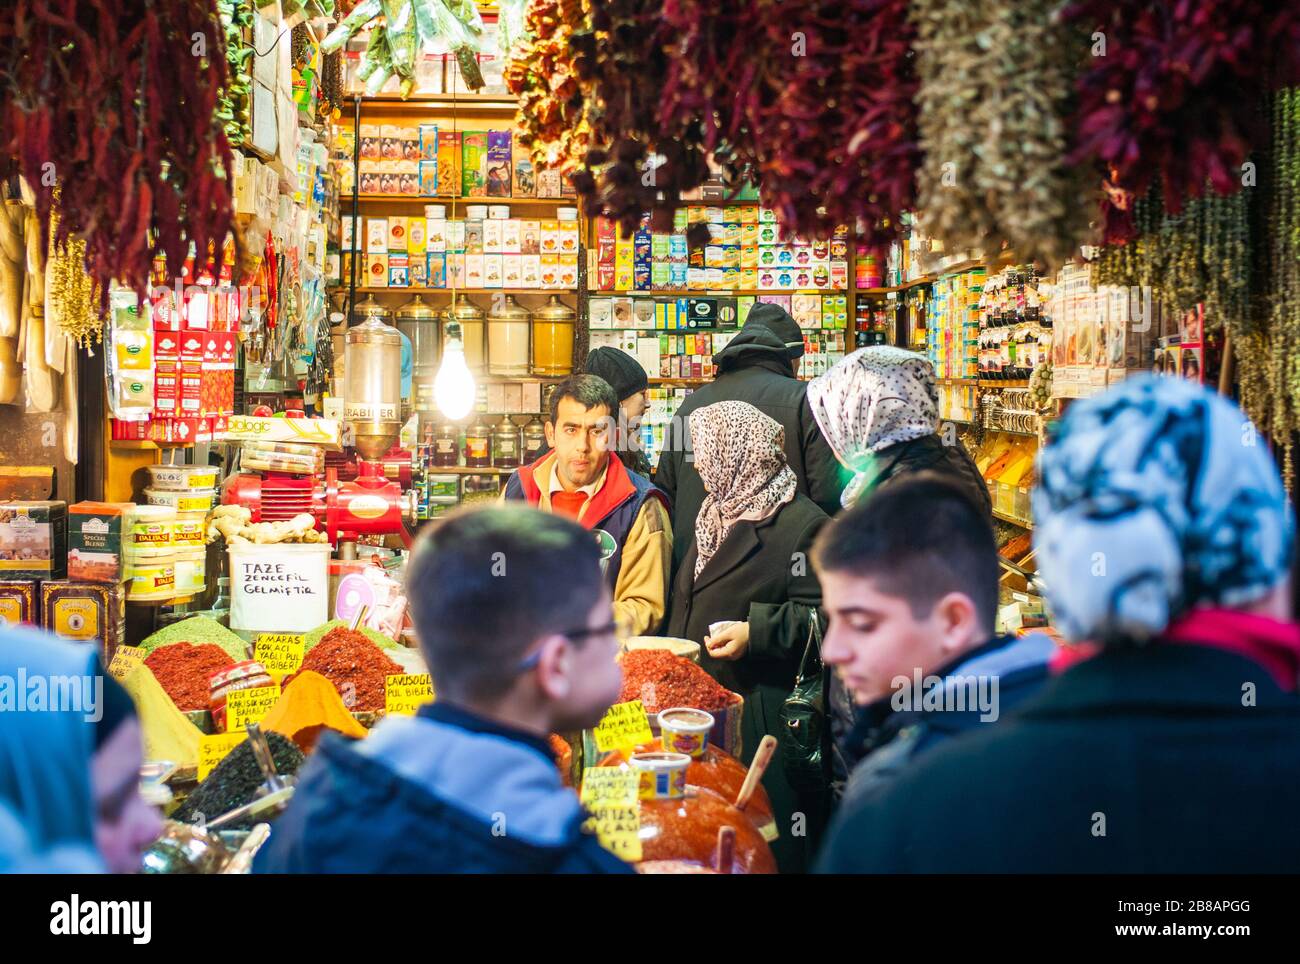 Estambul, Turquía - 3 de enero de 2012: Escena de compras en el Bazar de las Especias o el Bazar Egipcio Misir Carsisi en Eminonu, Estambul. Foto de stock